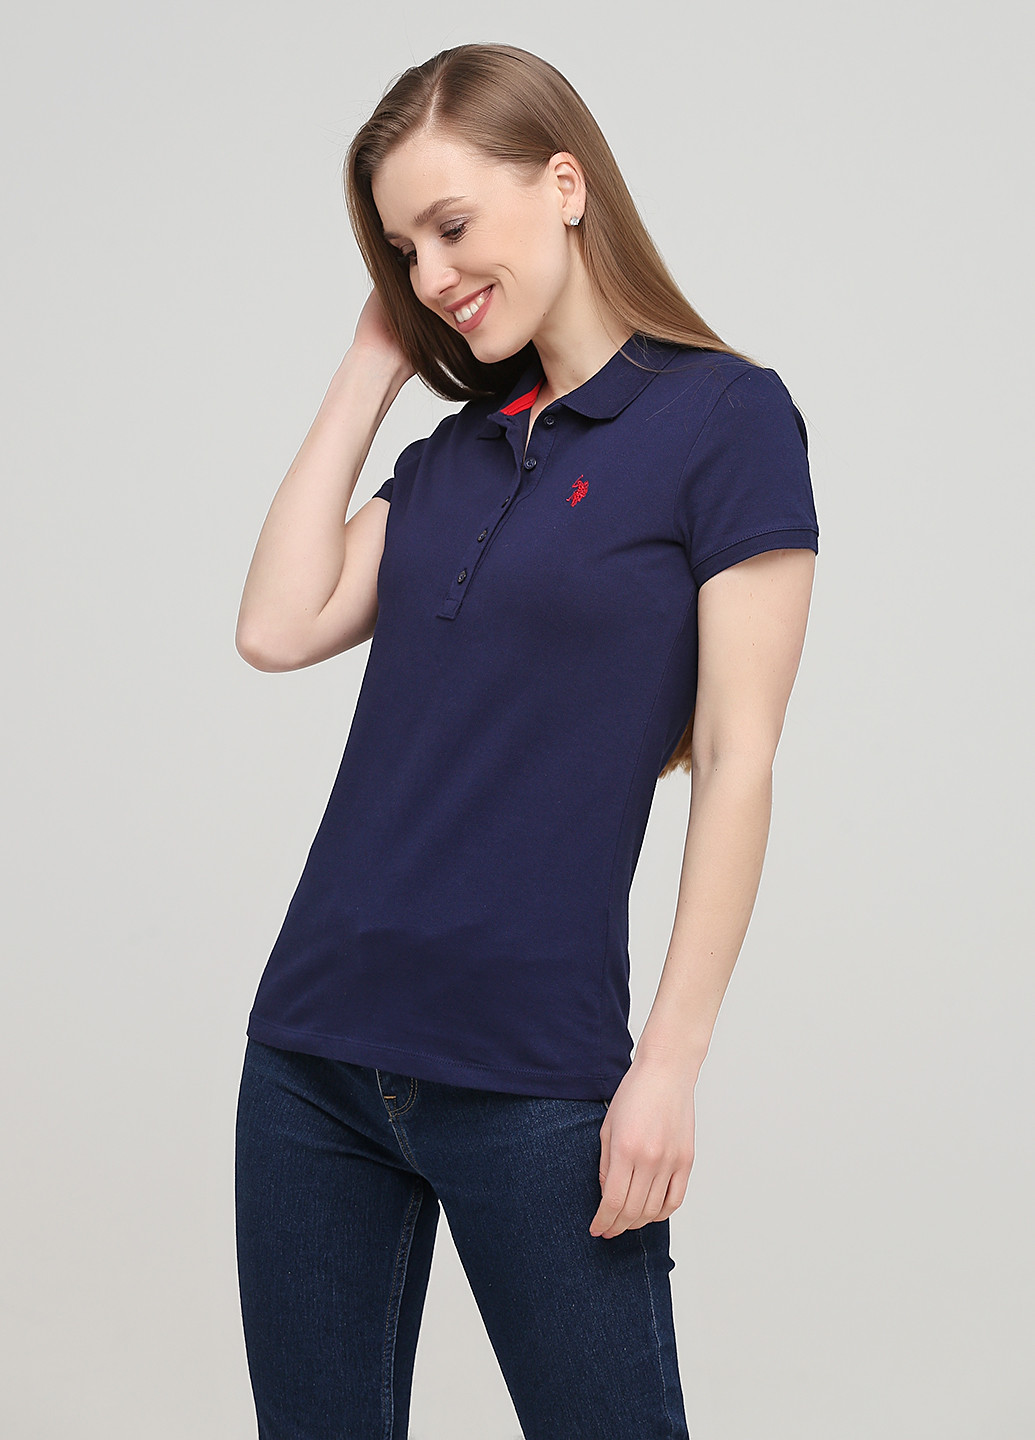 Темно-синяя женская футболка-поло U.S. Polo Assn. с логотипом